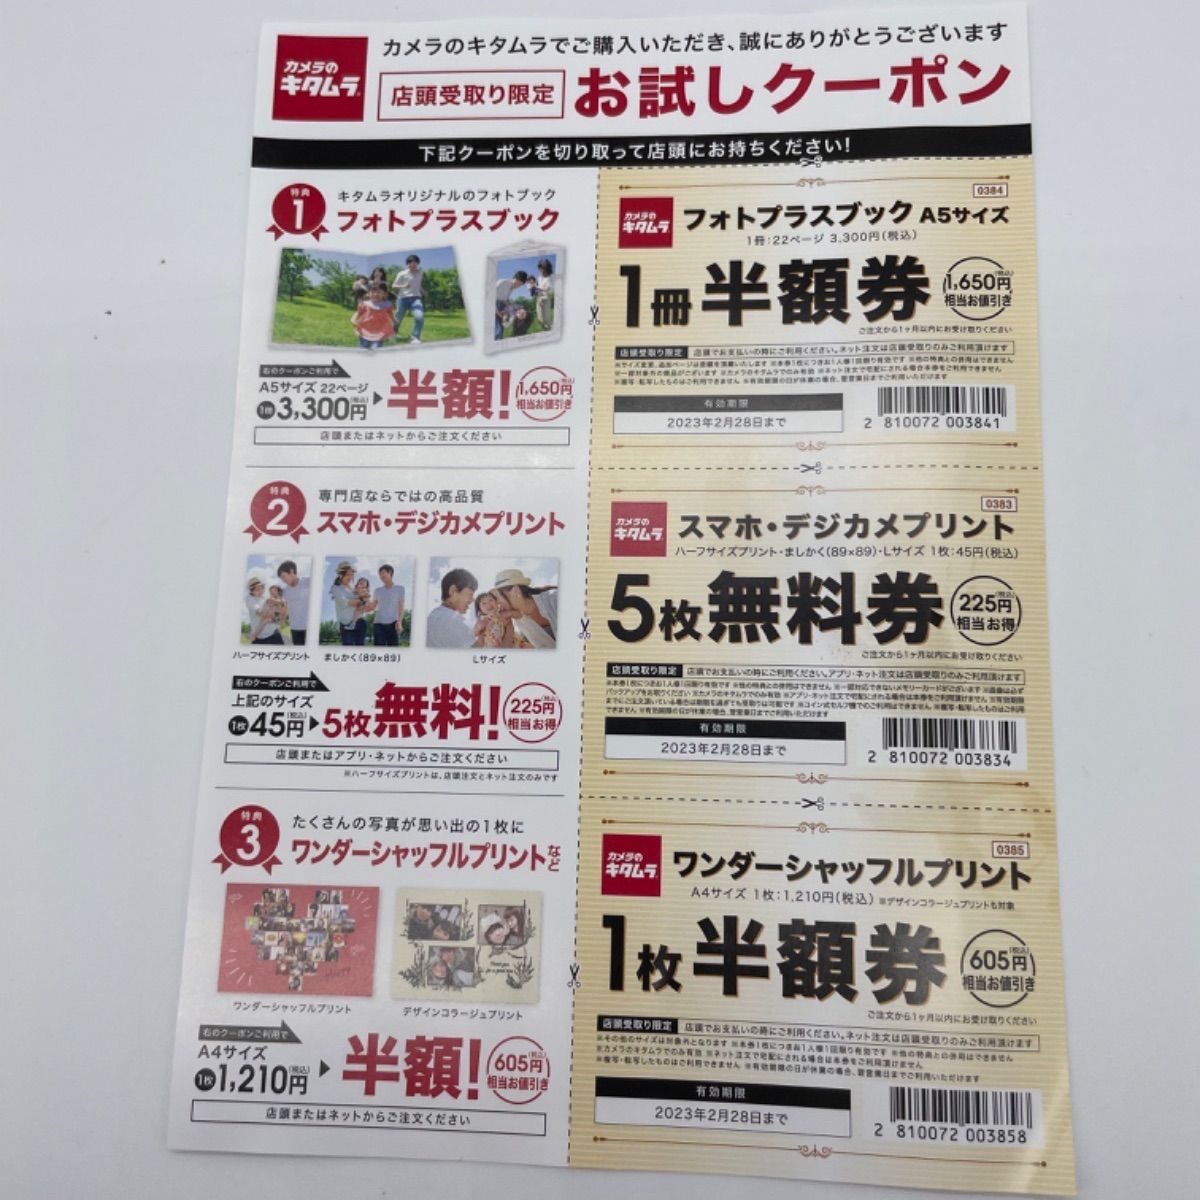 海外 カメラのキタムラ フォトプラスブック 1冊半額券 2枚 クーポン 割引券